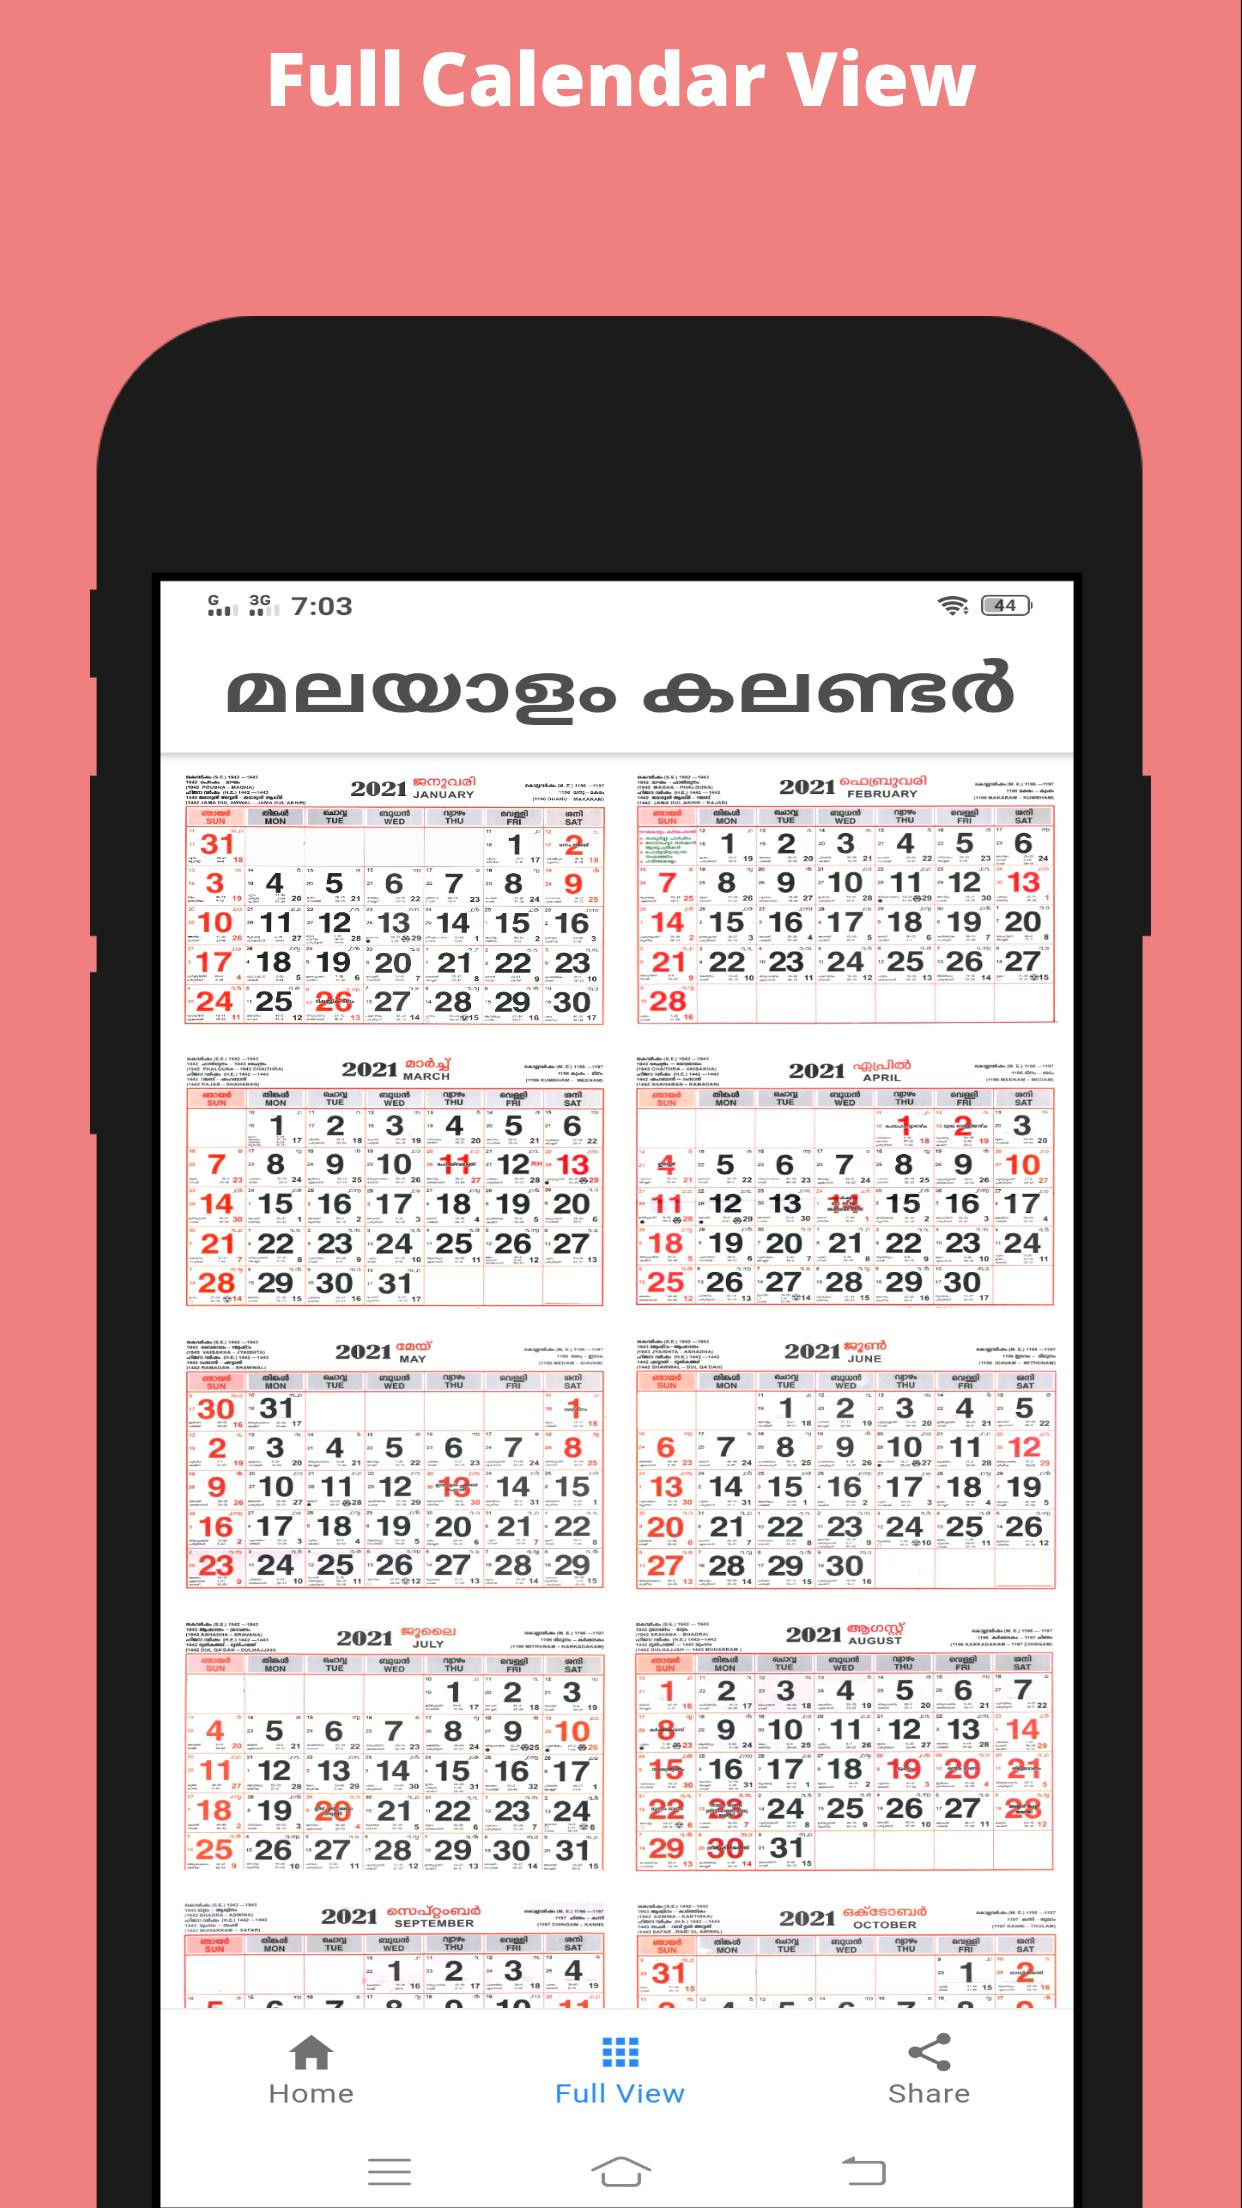 2021 Kerala Malayalam Calendar For Android - Apk Download  Mathrubhumi Malayalam Calendar 2021